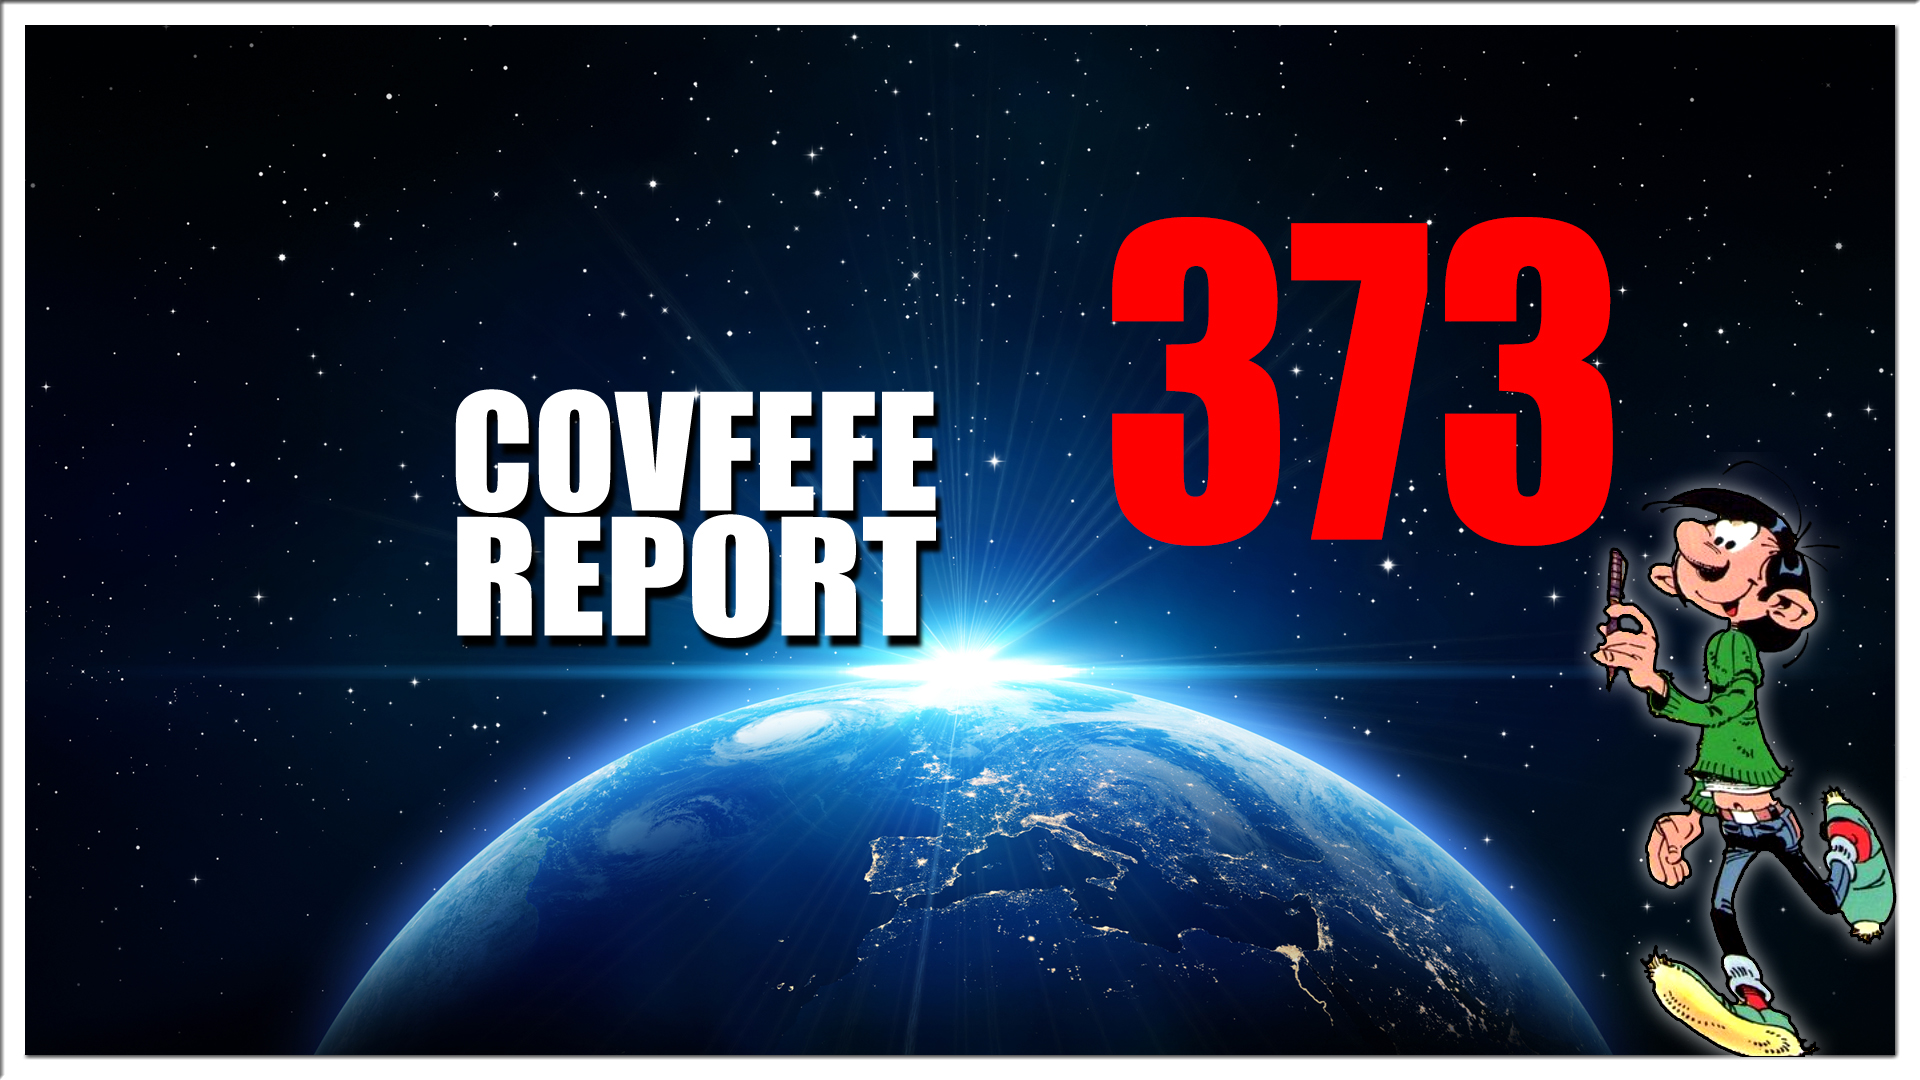 Covfefe Report 373. Hoop gebeurt, Jip en Janneke, No Coincidence, No deals